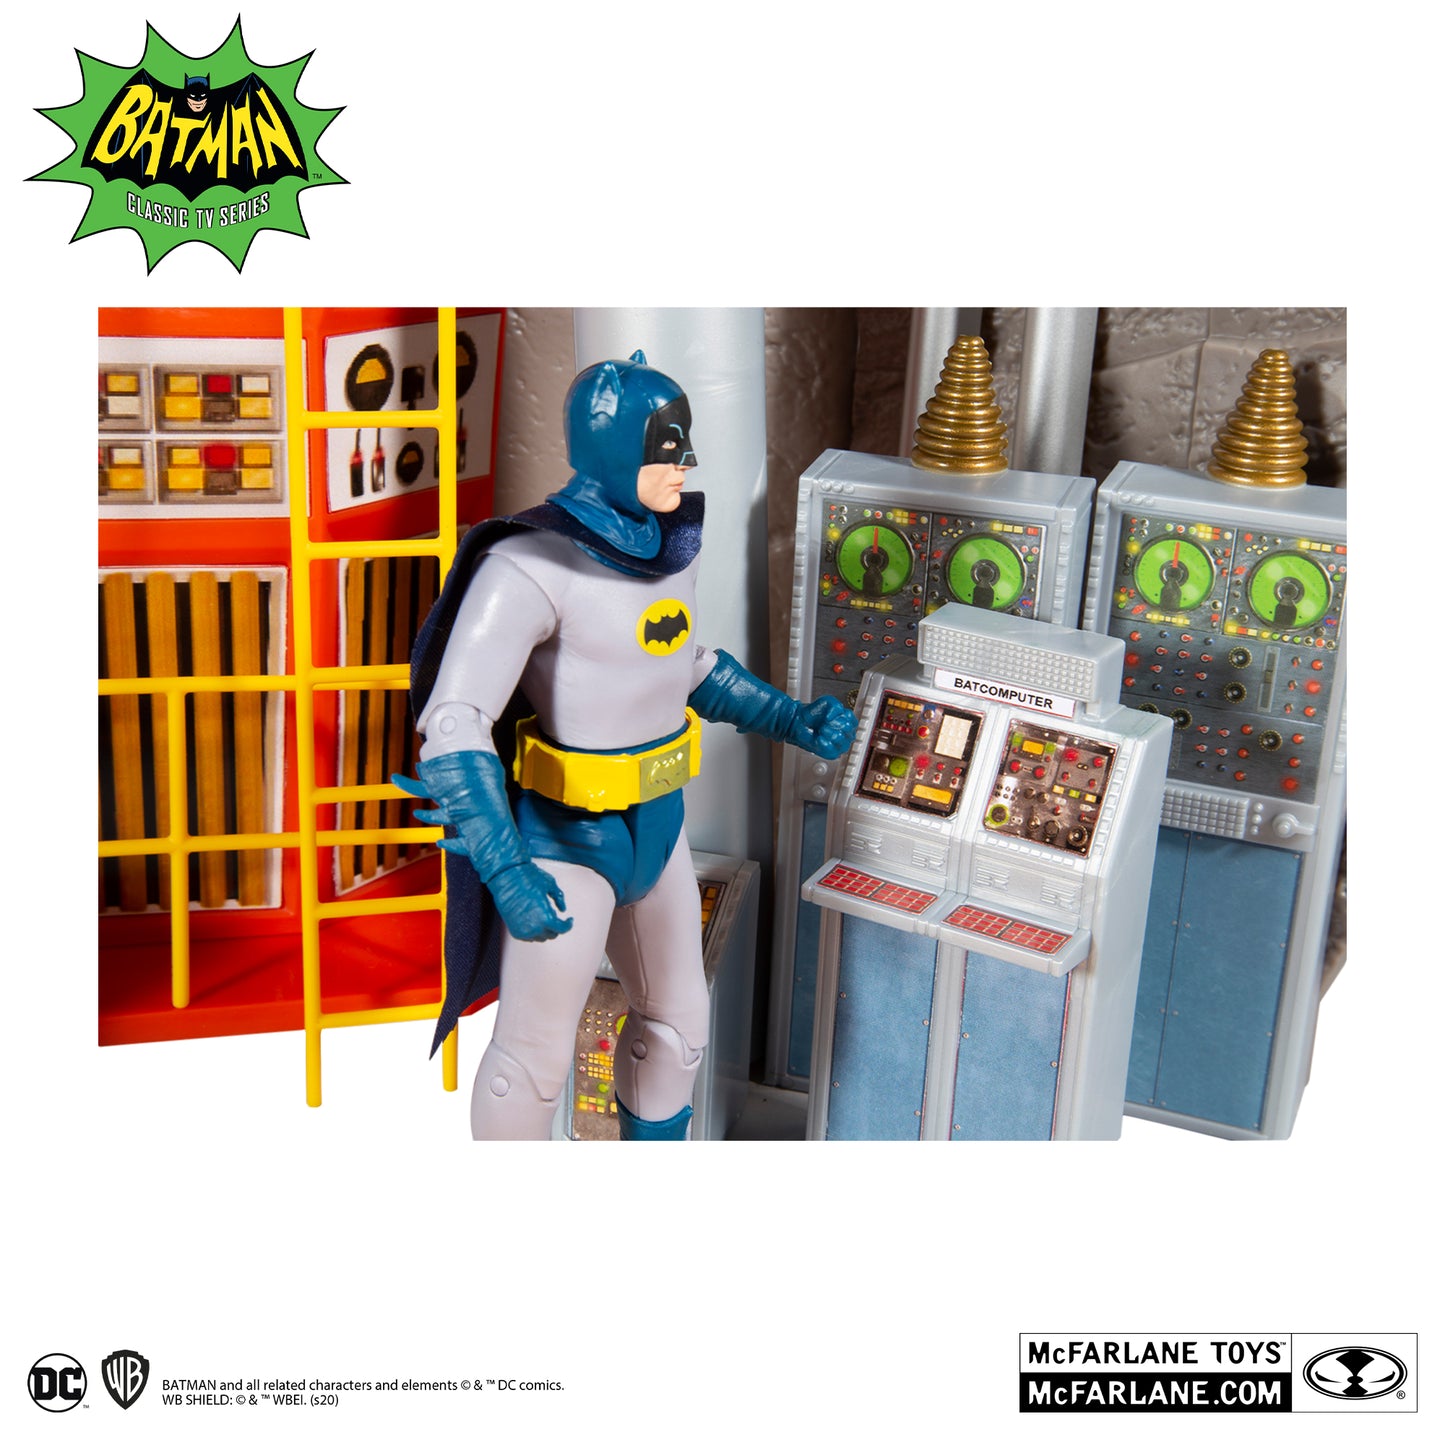 McFarlane Toys DC Retro Batman 66 Batcave Playset